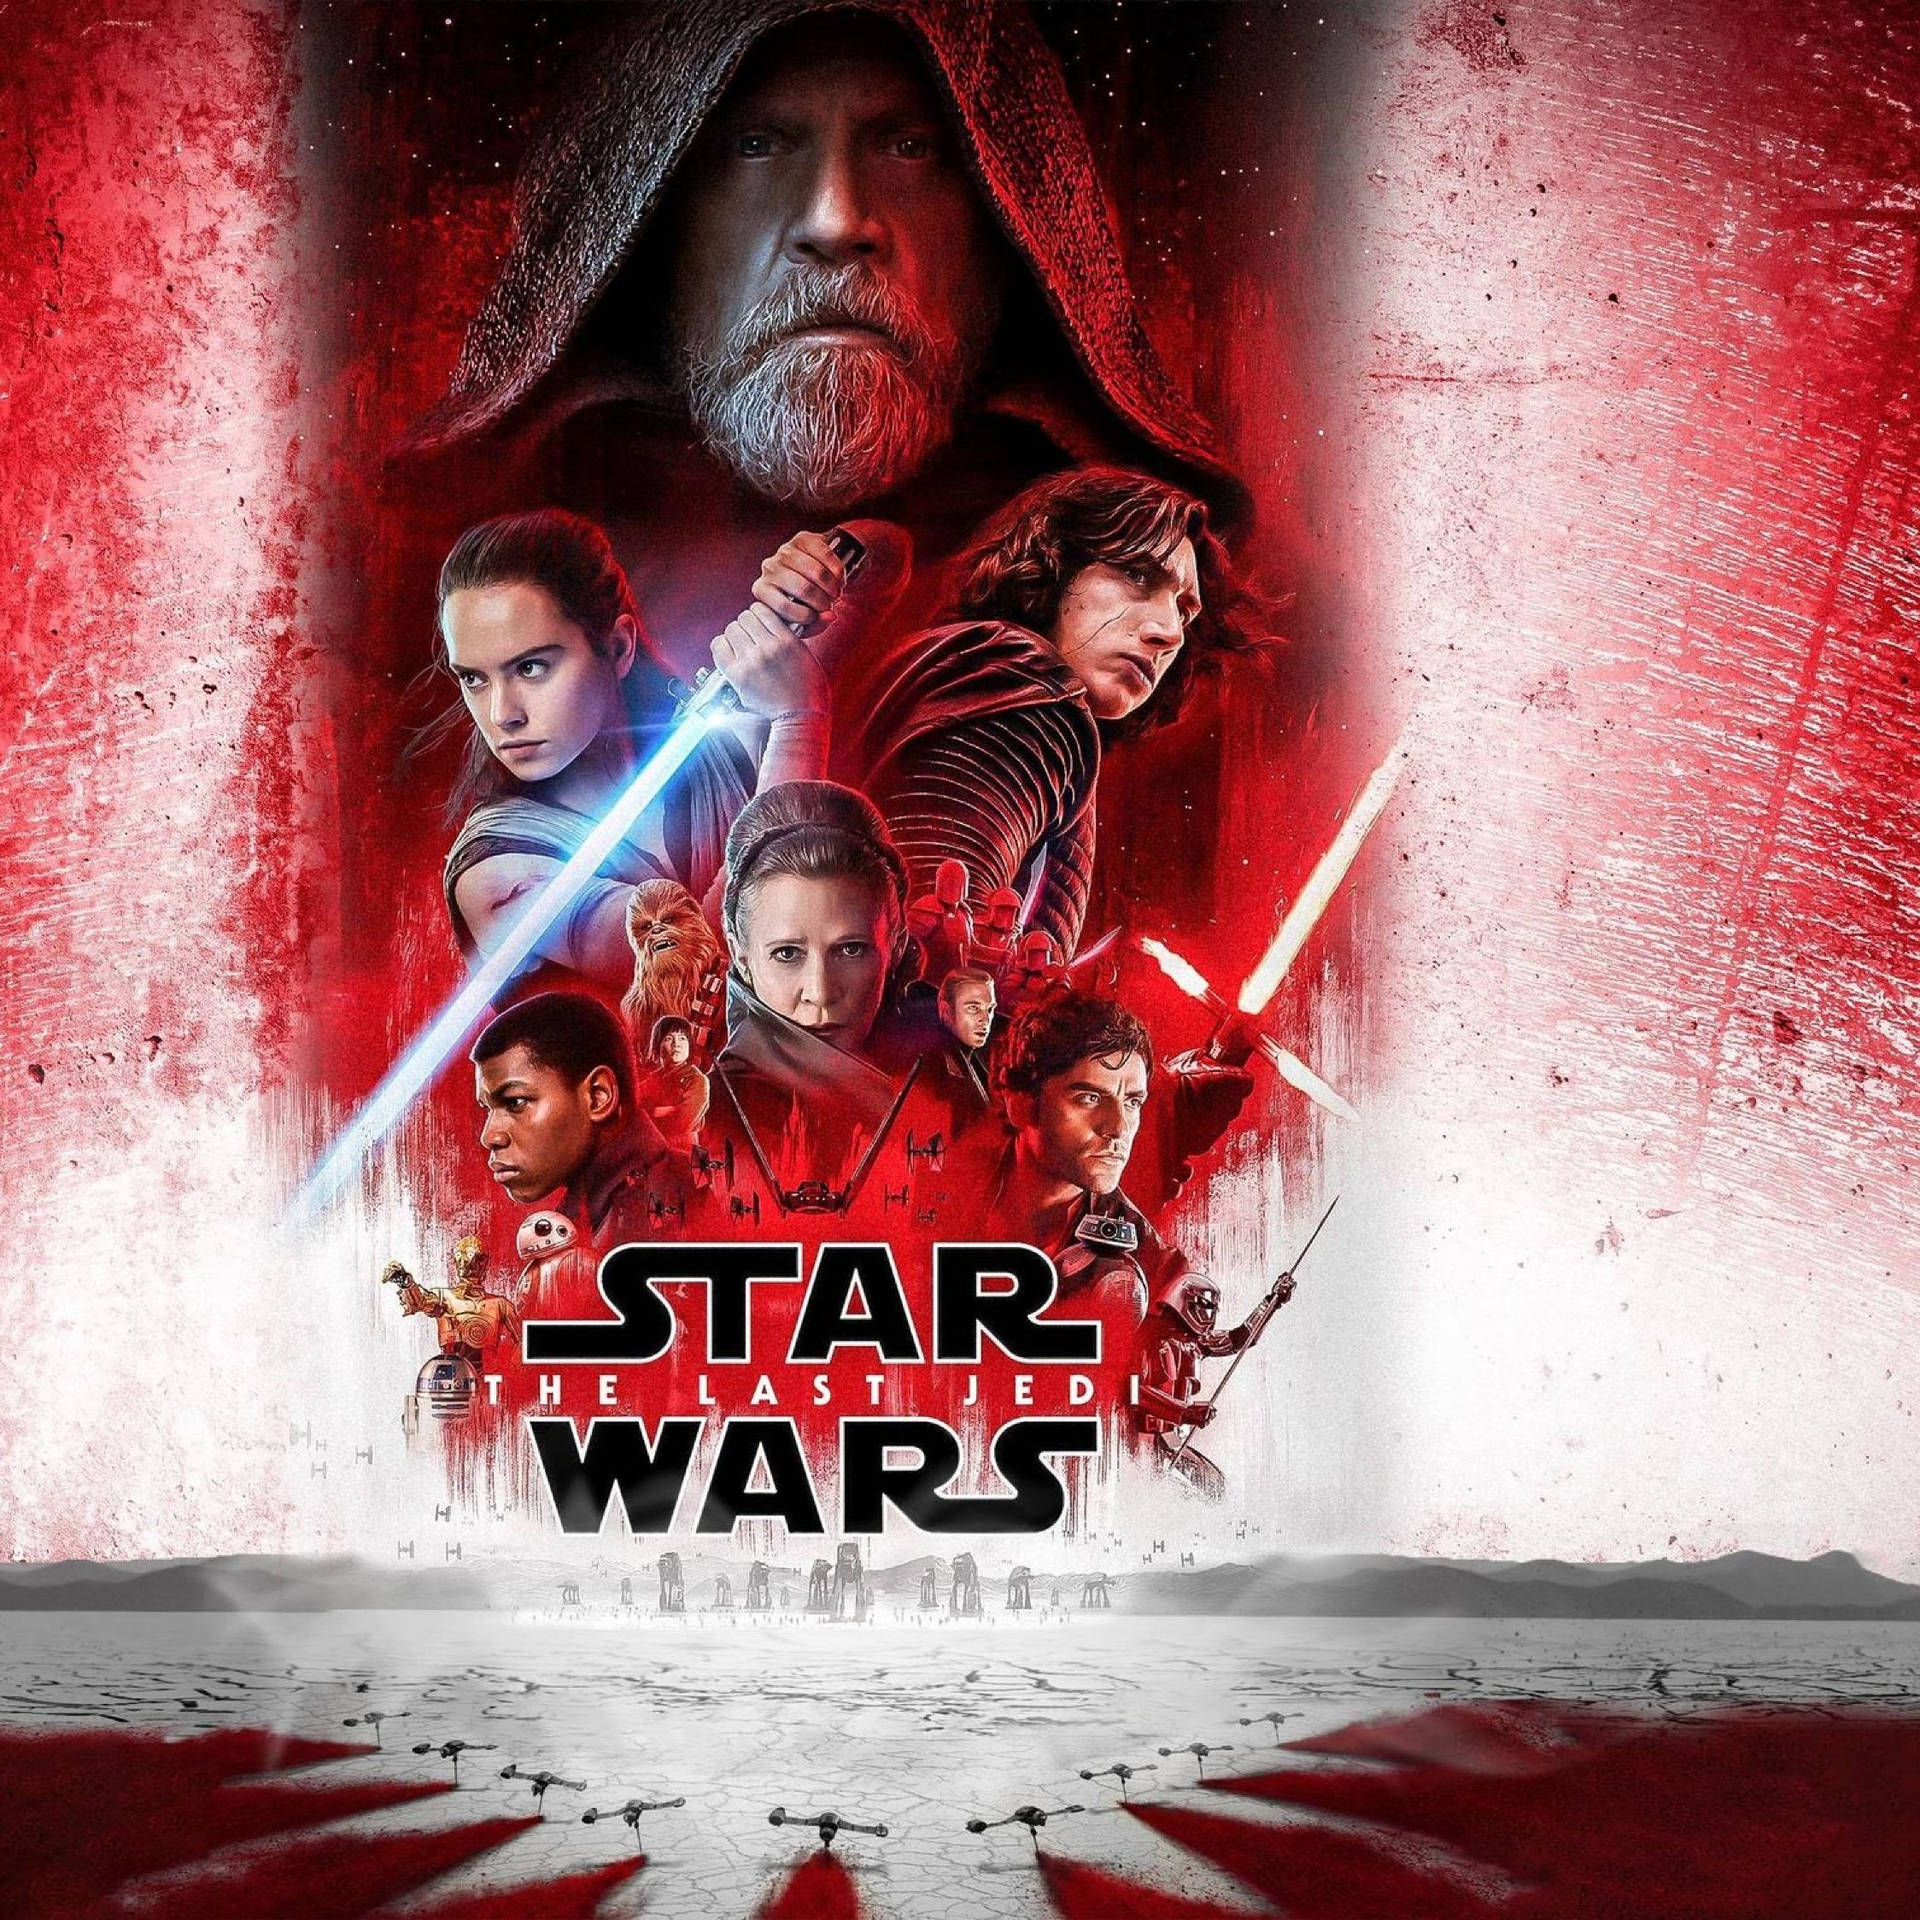 Full Poster The Last Jedi Star Wars Wallpaper